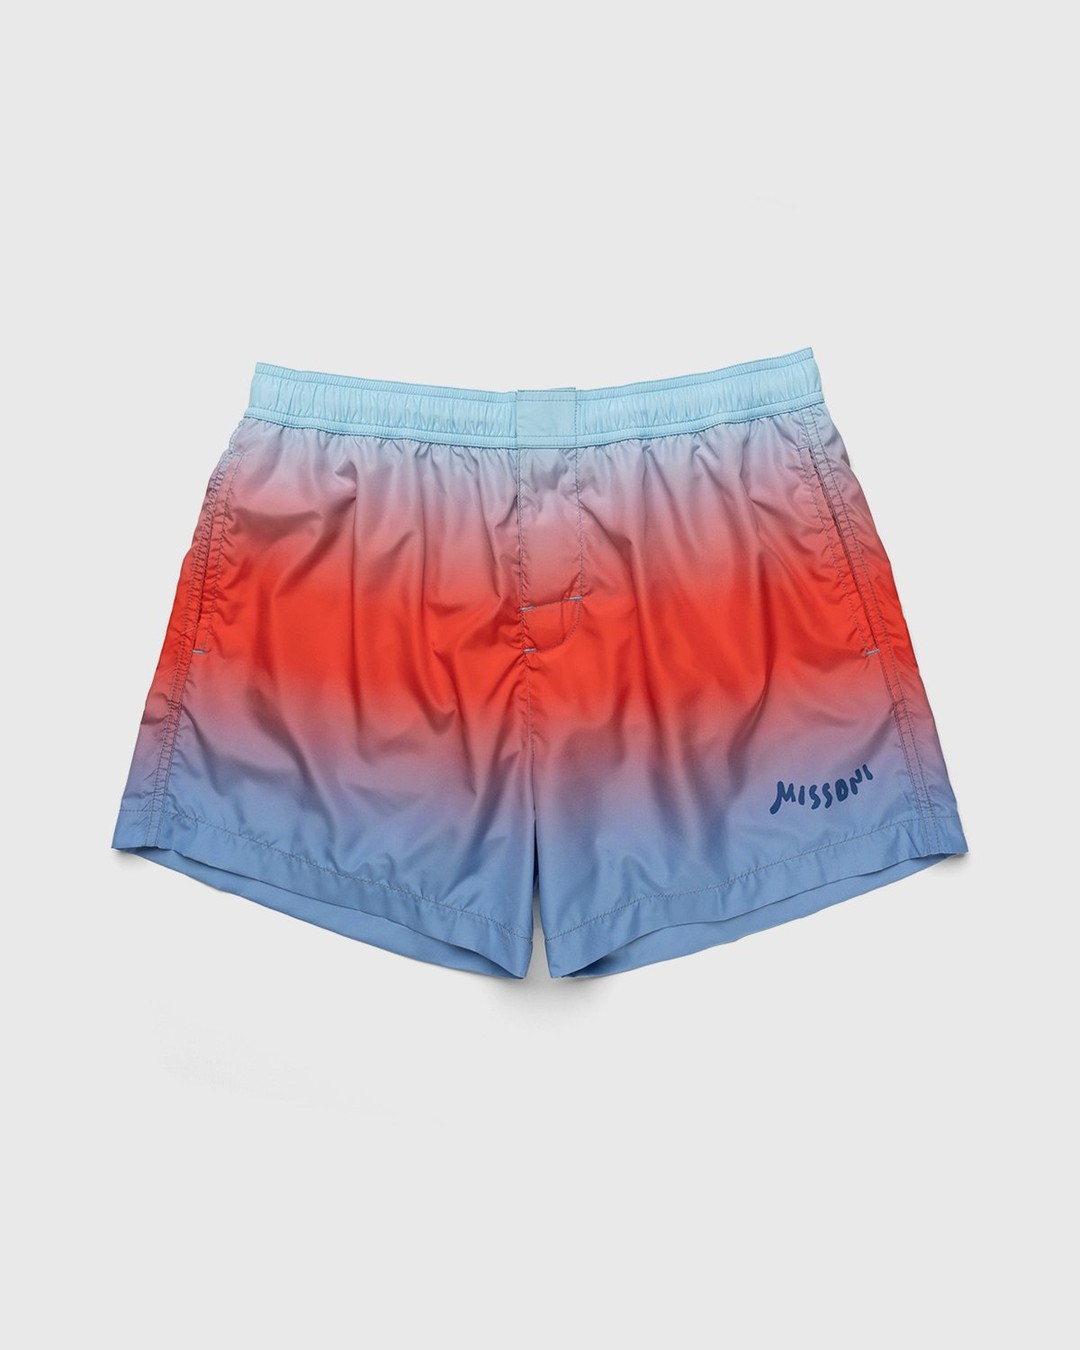 Missoni – Degrade Print Swim Shorts Light Blue - Swim Shorts - Blue - Image 1